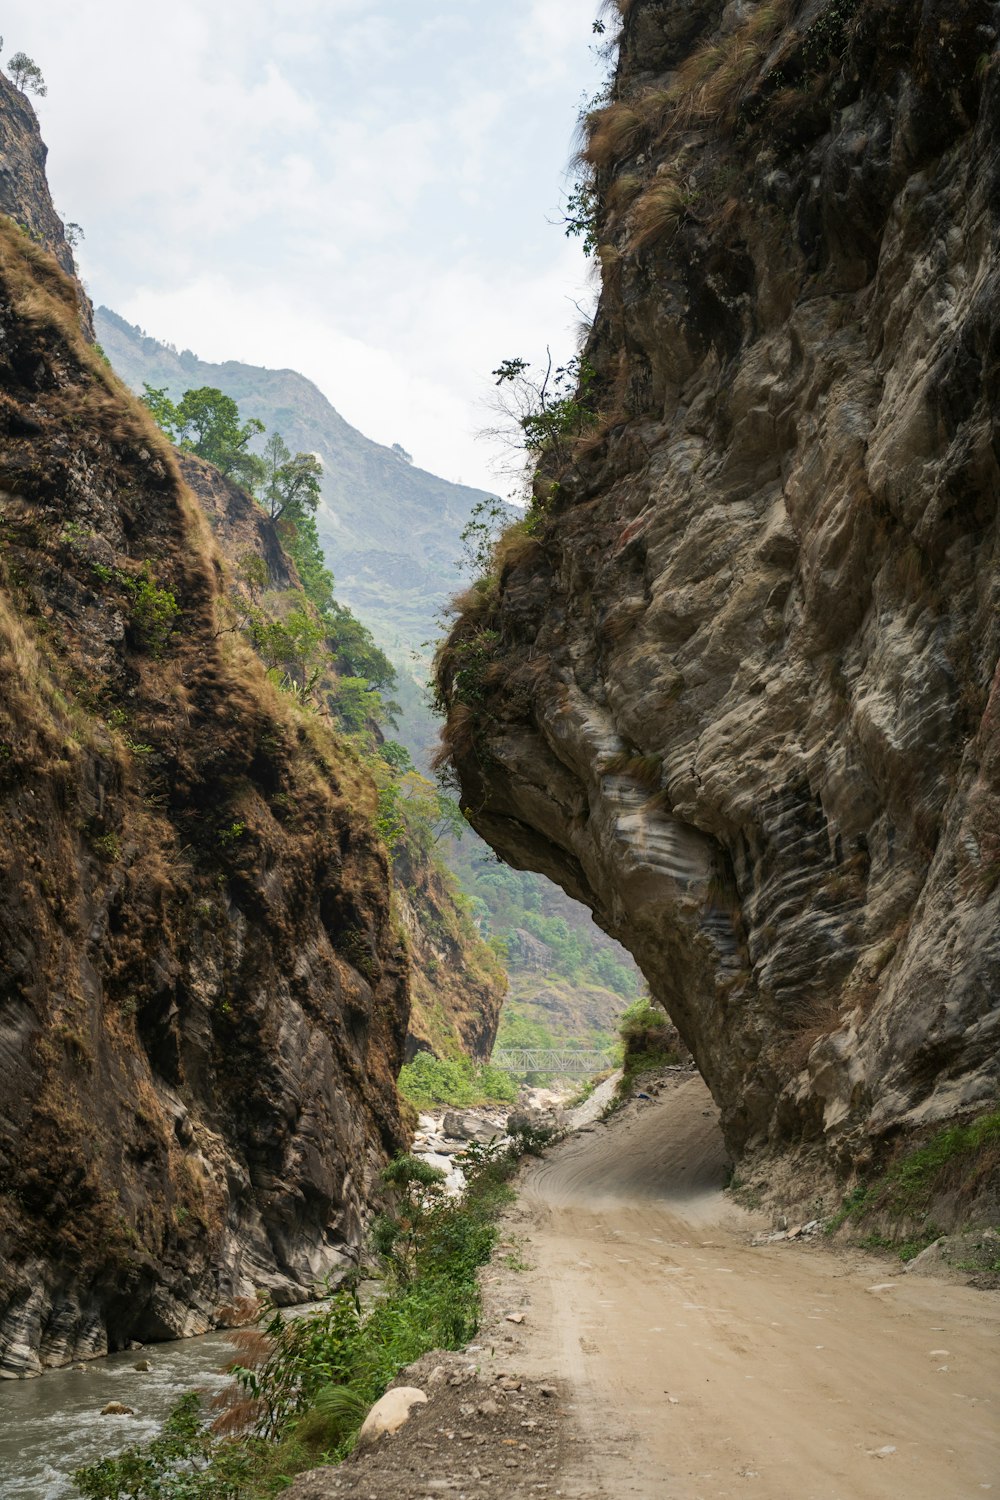 a dirt road between rocky cliffs